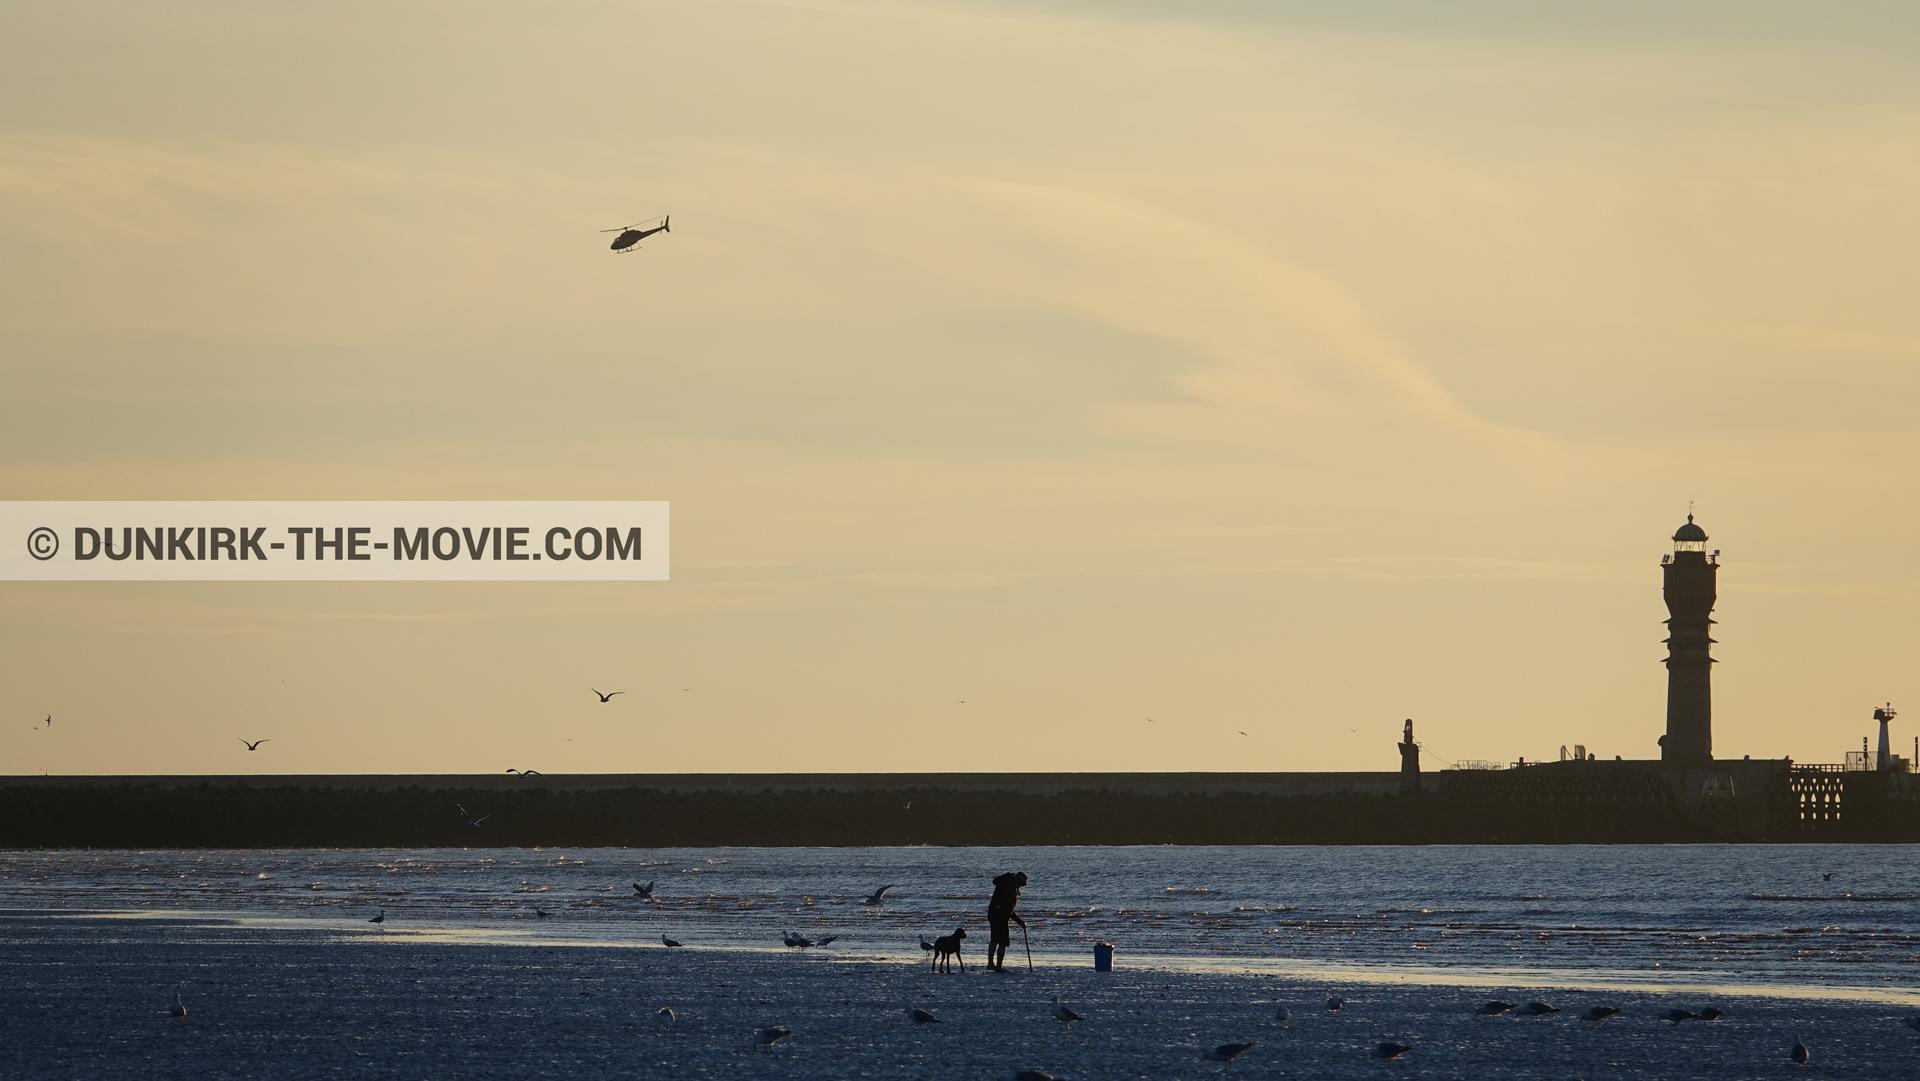 Fotos con cielo anaranjado, cámara helicóptero, mares calma,  durante el rodaje de la película Dunkerque de Nolan